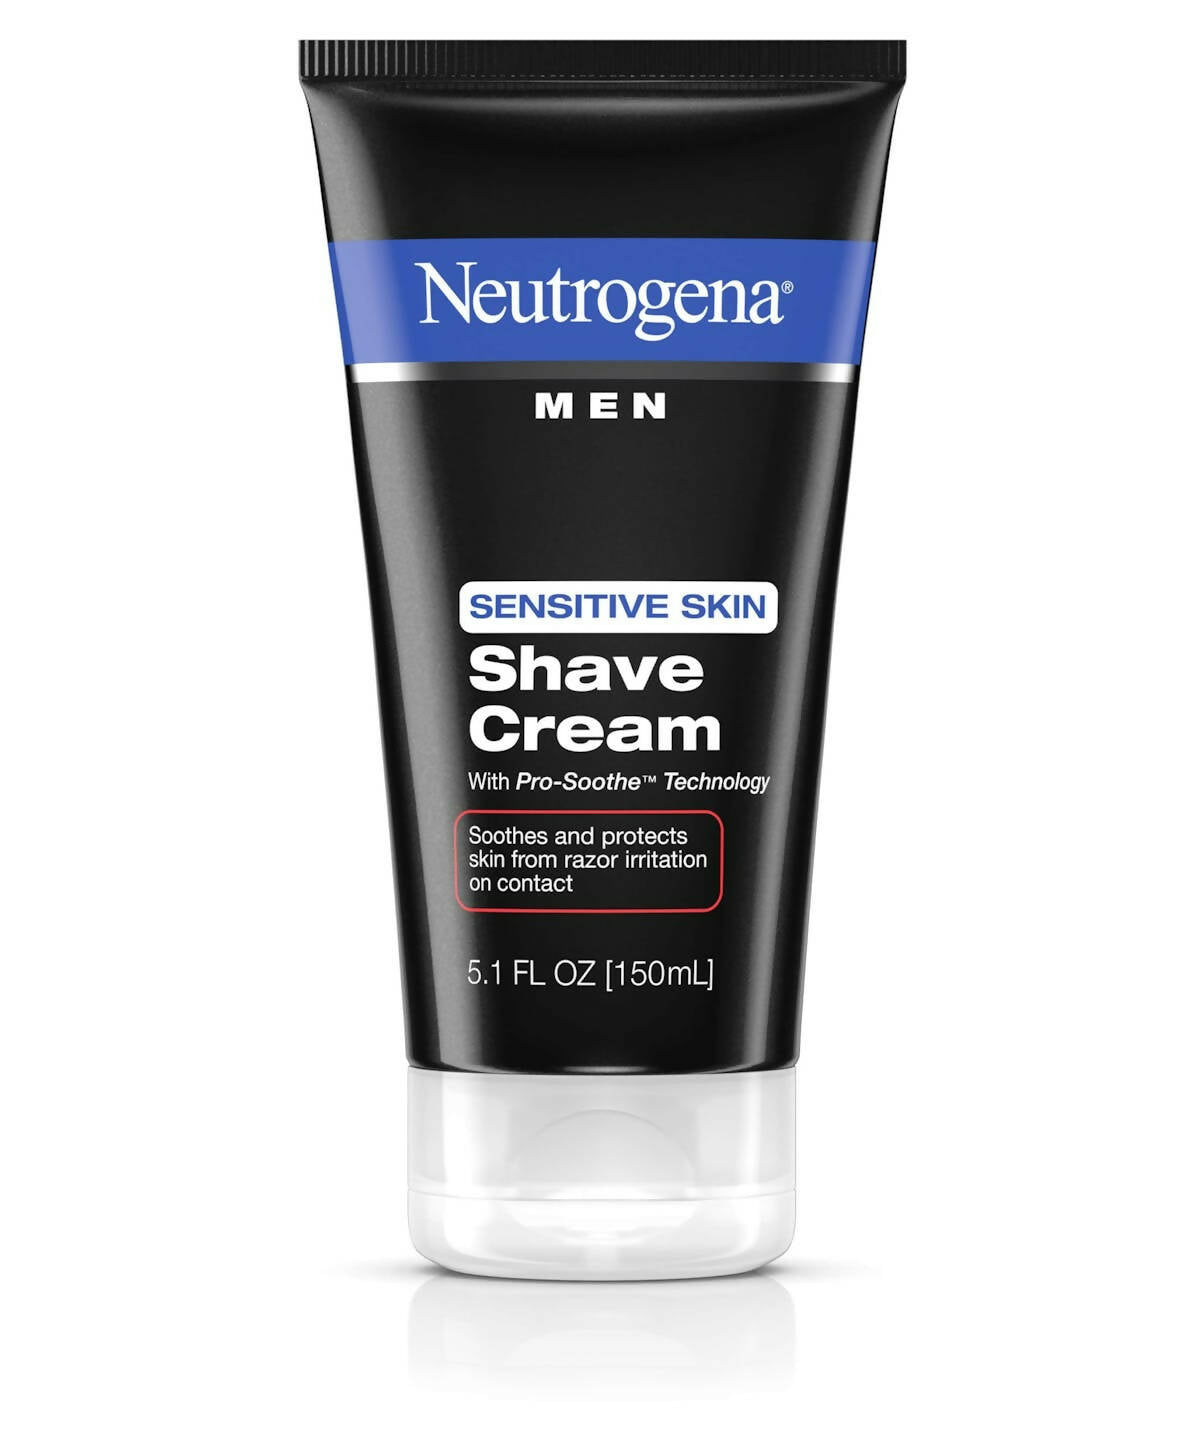 Neutrogena Men Sensitive Skin Shave Cream - Distacart